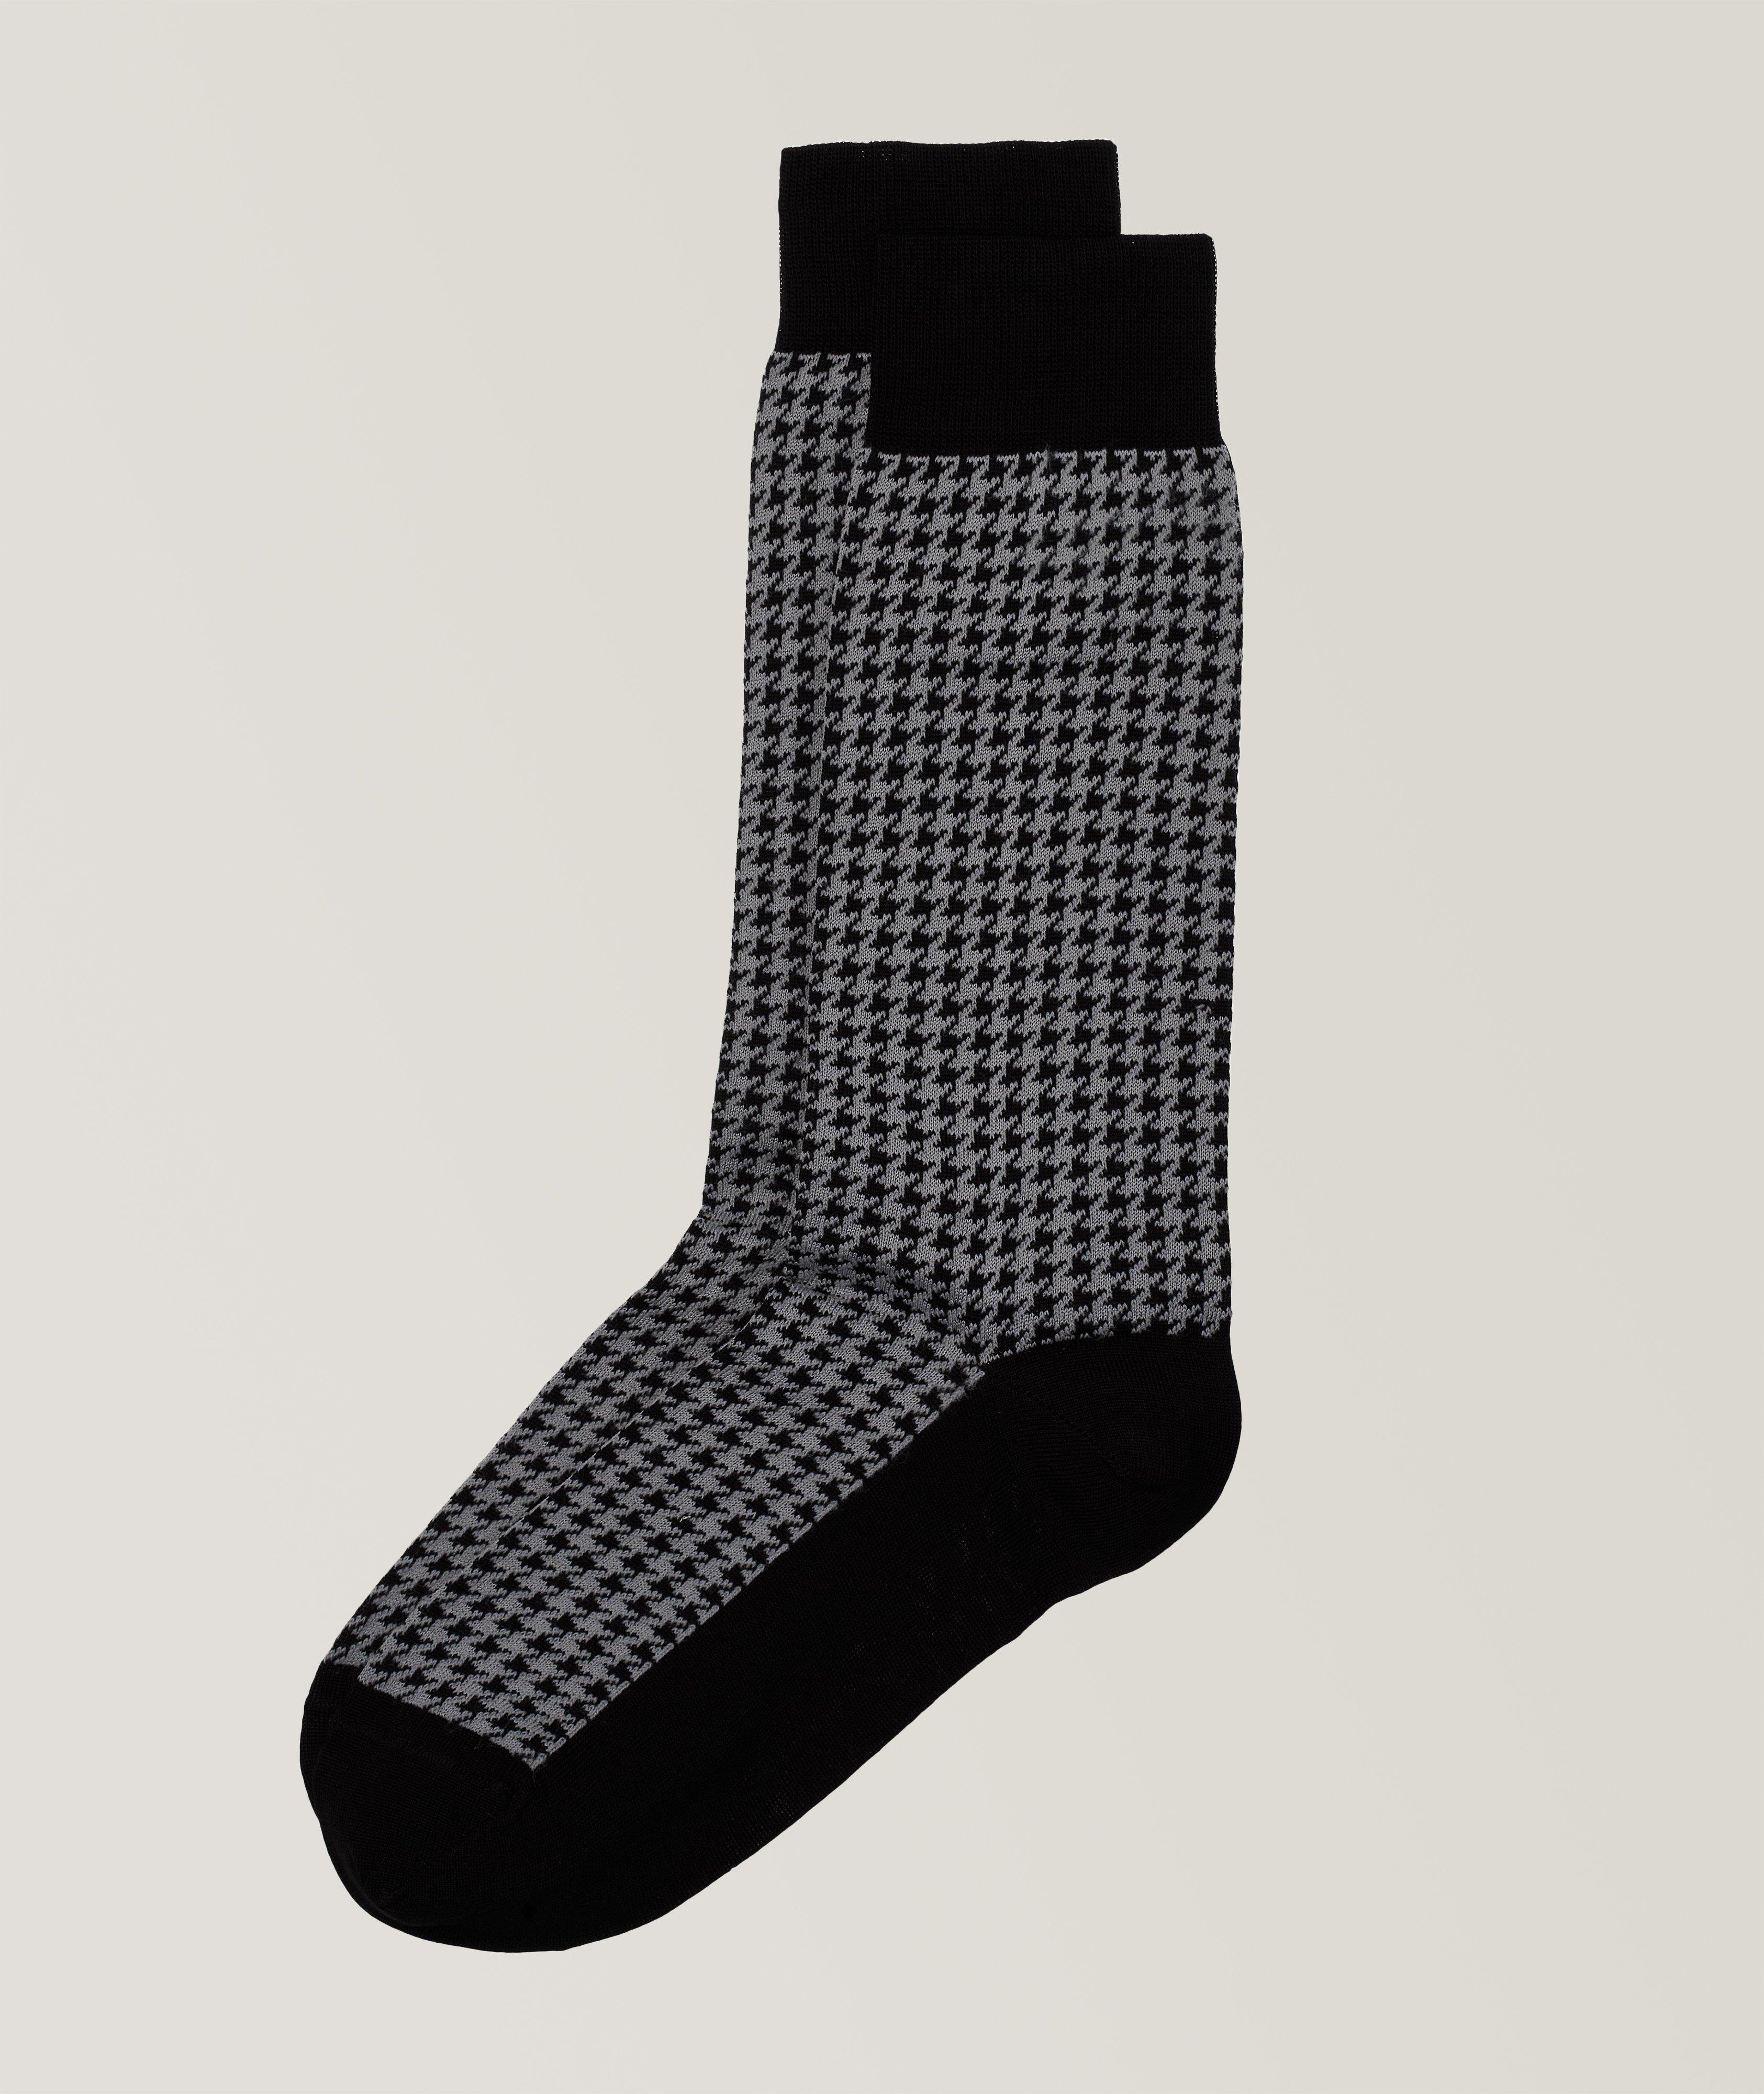 Houndstooth Patterned Cotton-Blend Dress Socks